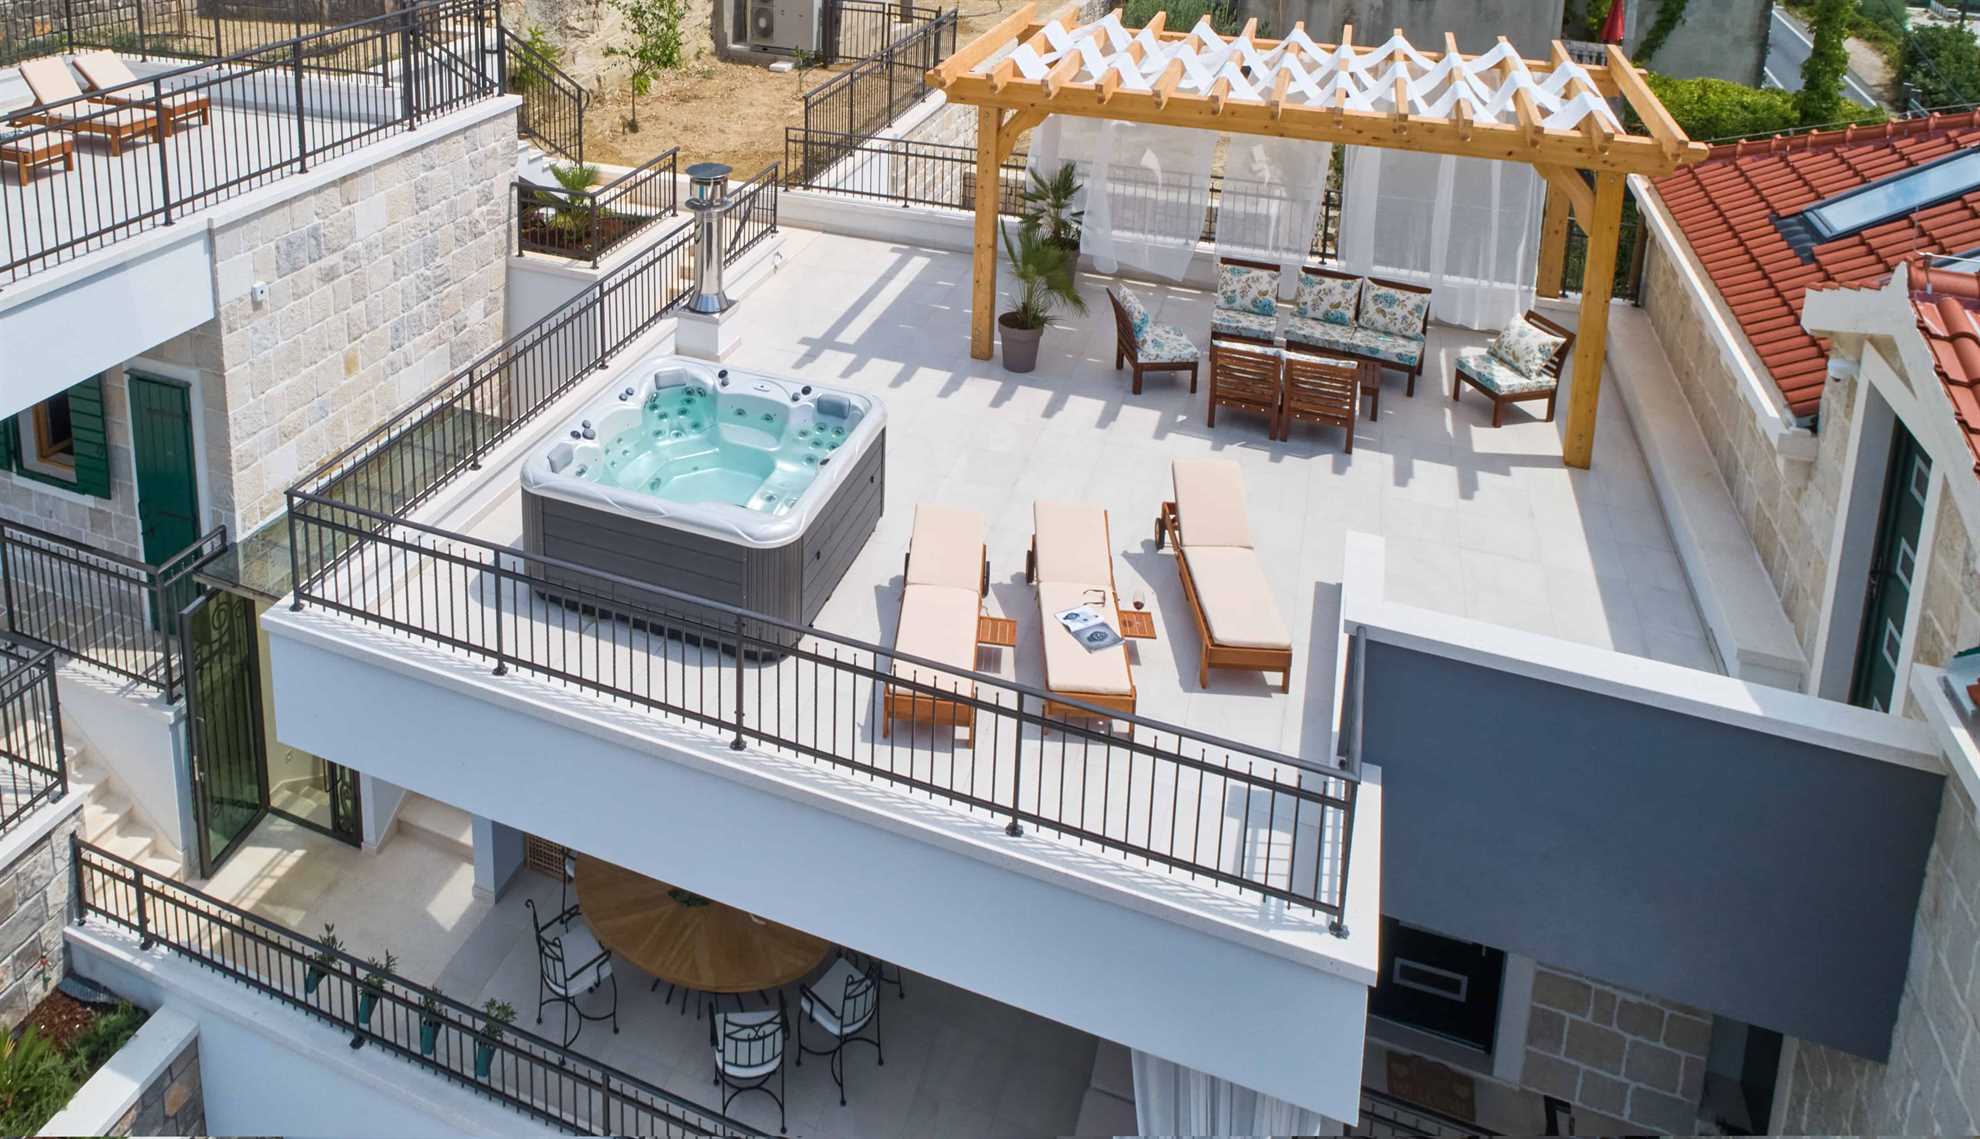 Massag pool leasure terrace.jpg